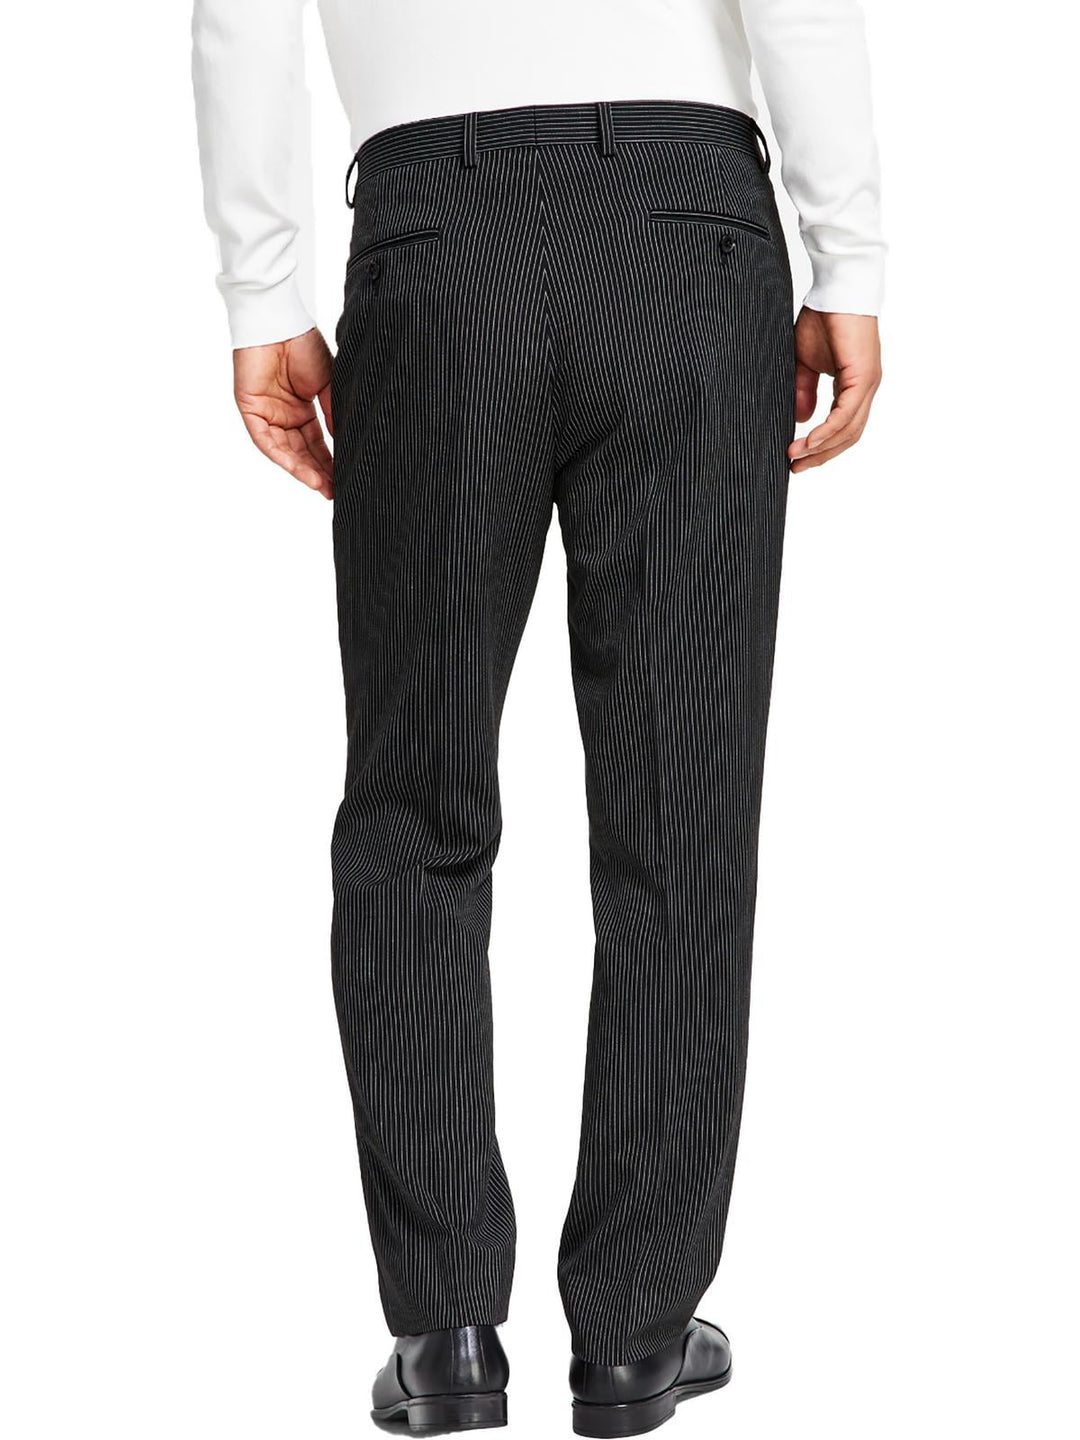 Alfani Men's Slim Fit Pinstripe Suit Separate Pants Black Size 30X32